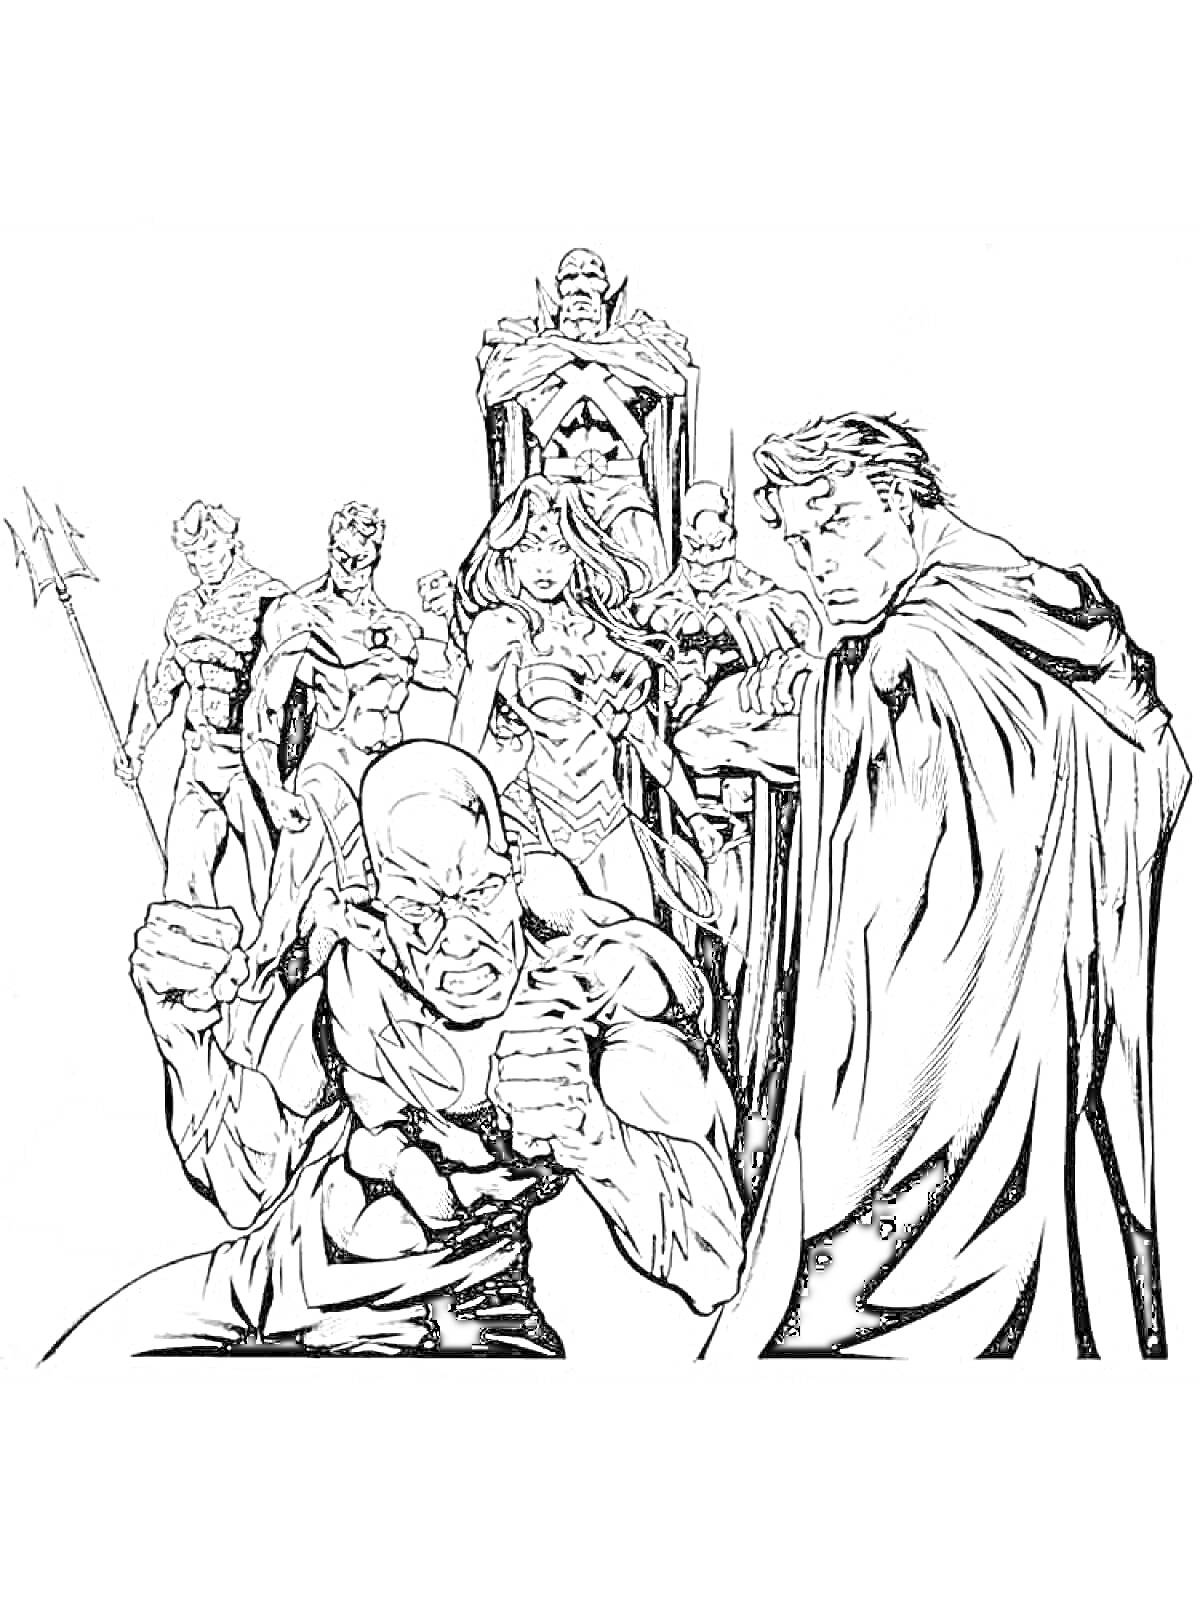 Раскраска Члены Лиги Справедливости: мужчина с трезубцем, мужчина в полумаске с копьем, женщина с мечом и щитом, мужчина в защитном костюме, мужчина с буквой 